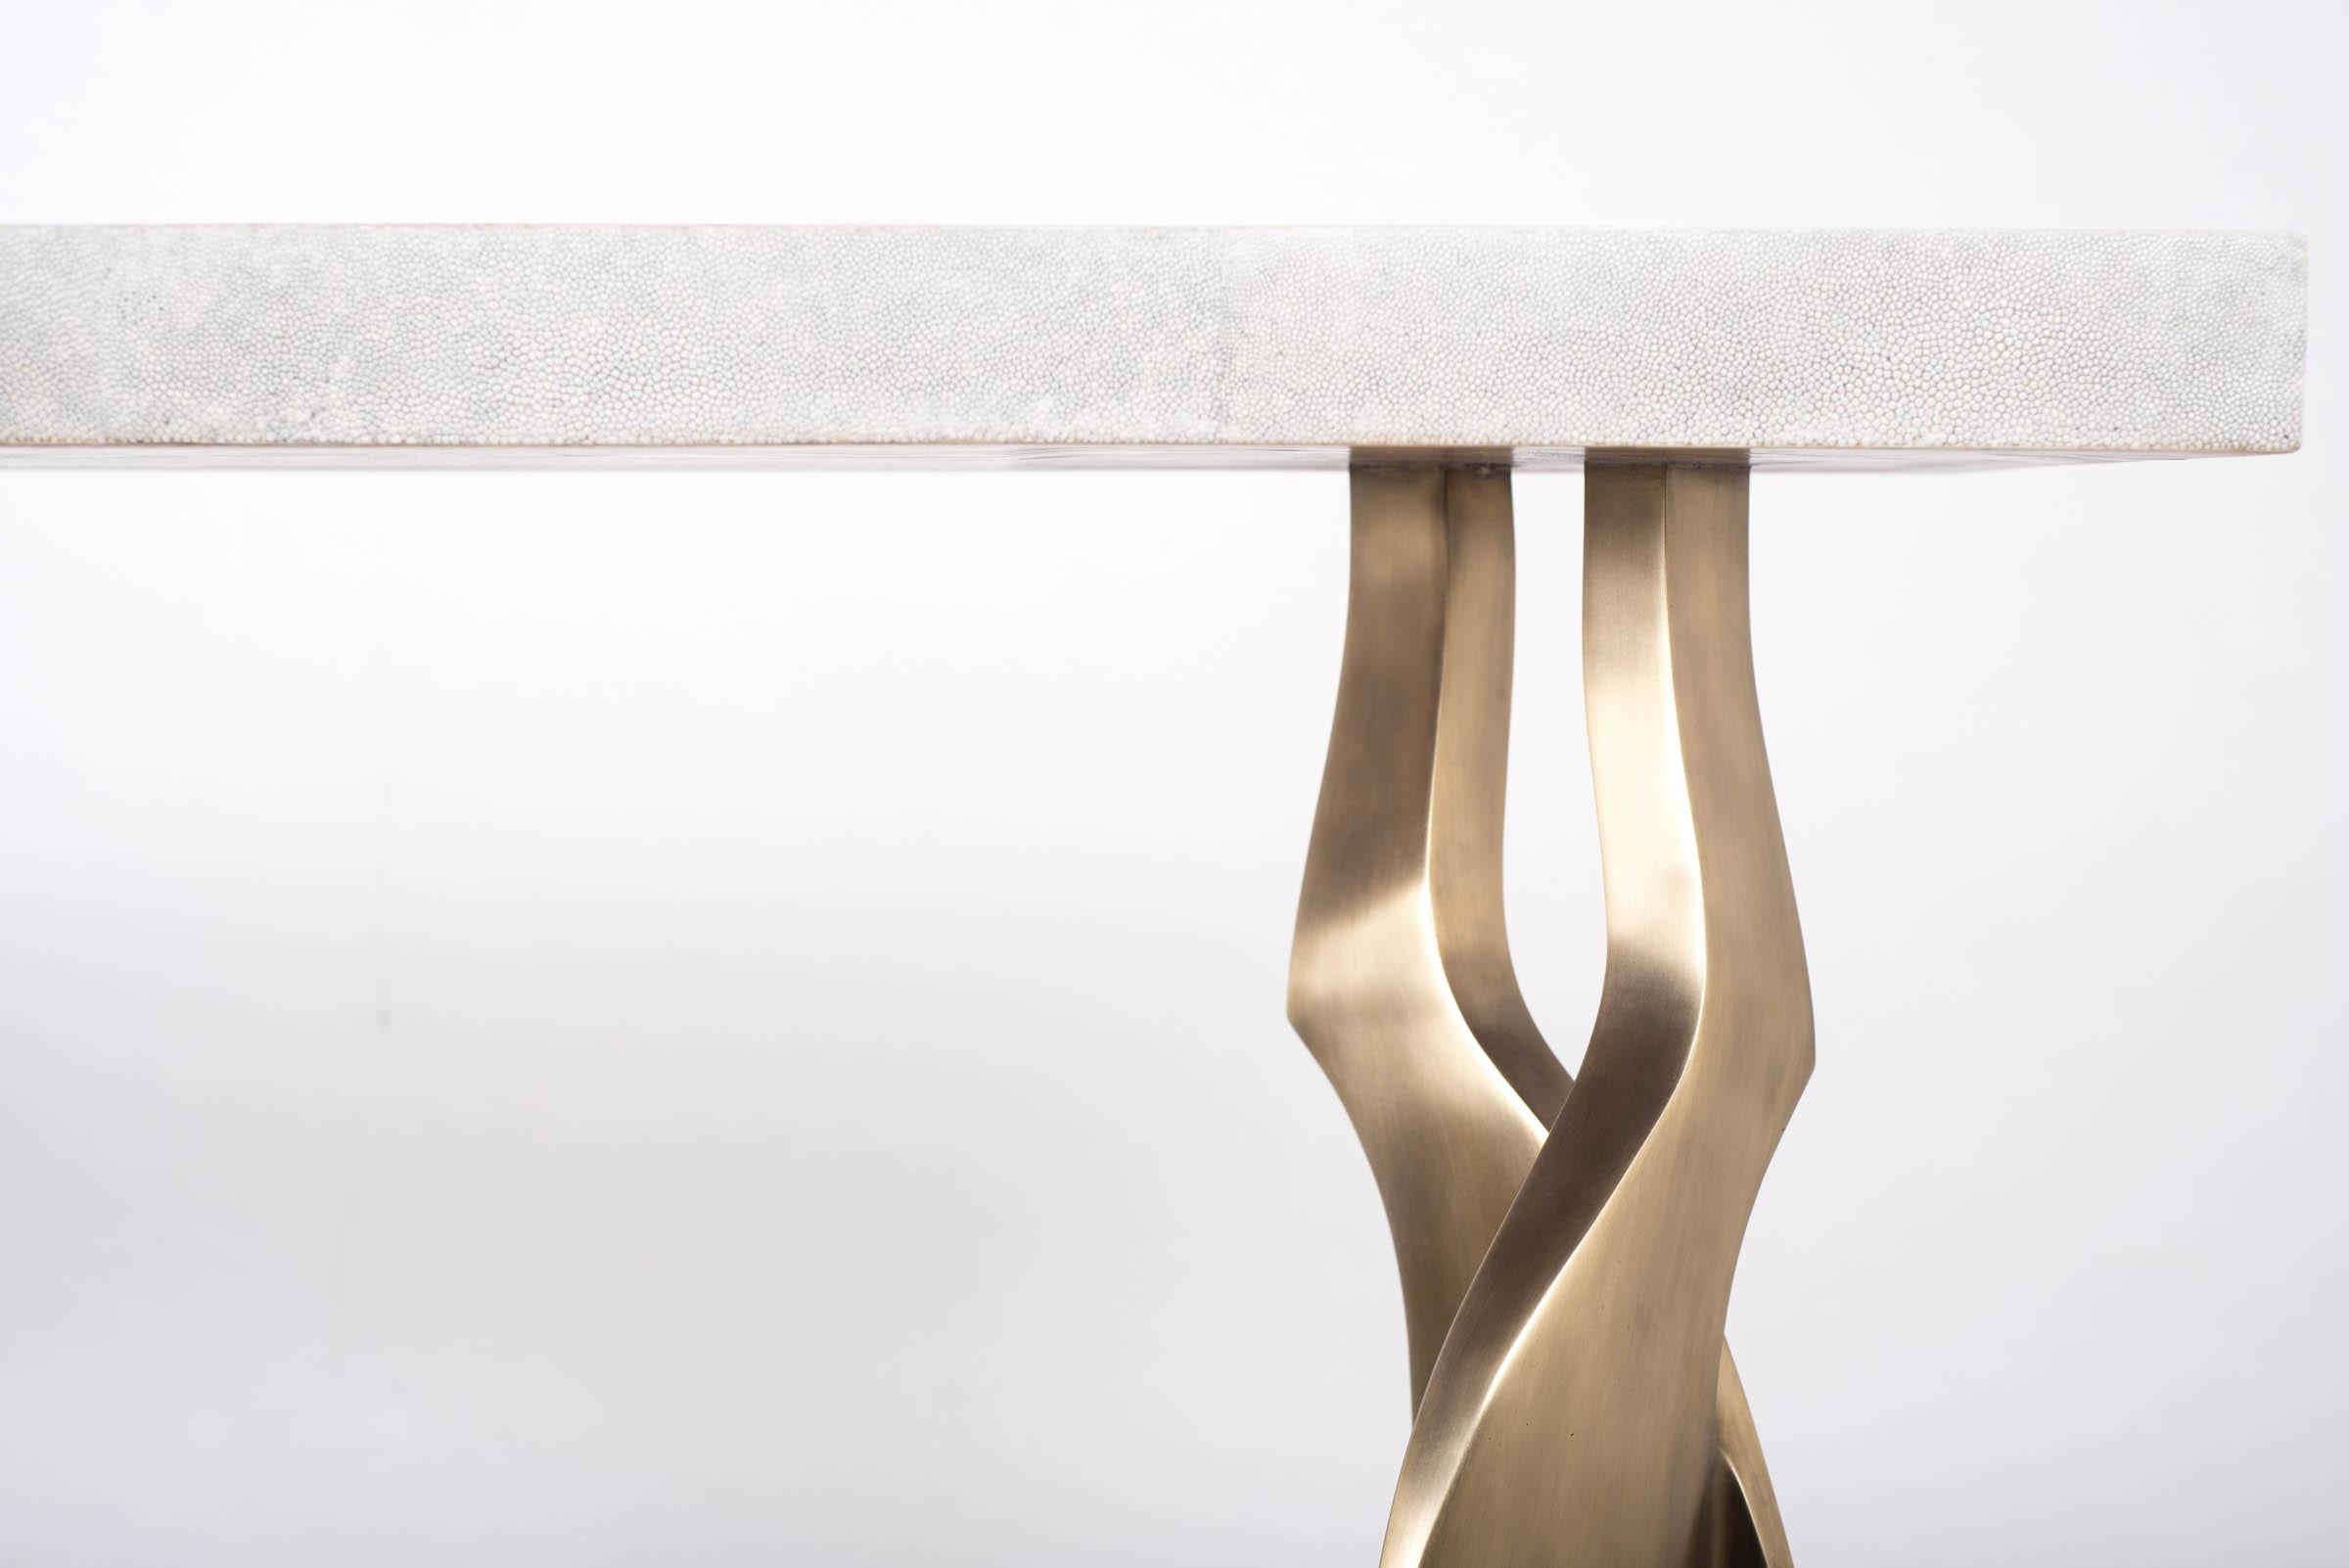 La table console Chital est à la fois spectaculaire et organique grâce à son design unique. Le plateau incrusté de galuchat crème repose sur une paire de pieds éthérés et sculpturaux en laiton bronze-patina. Cette pièce est conçue par Kifu Augousti,